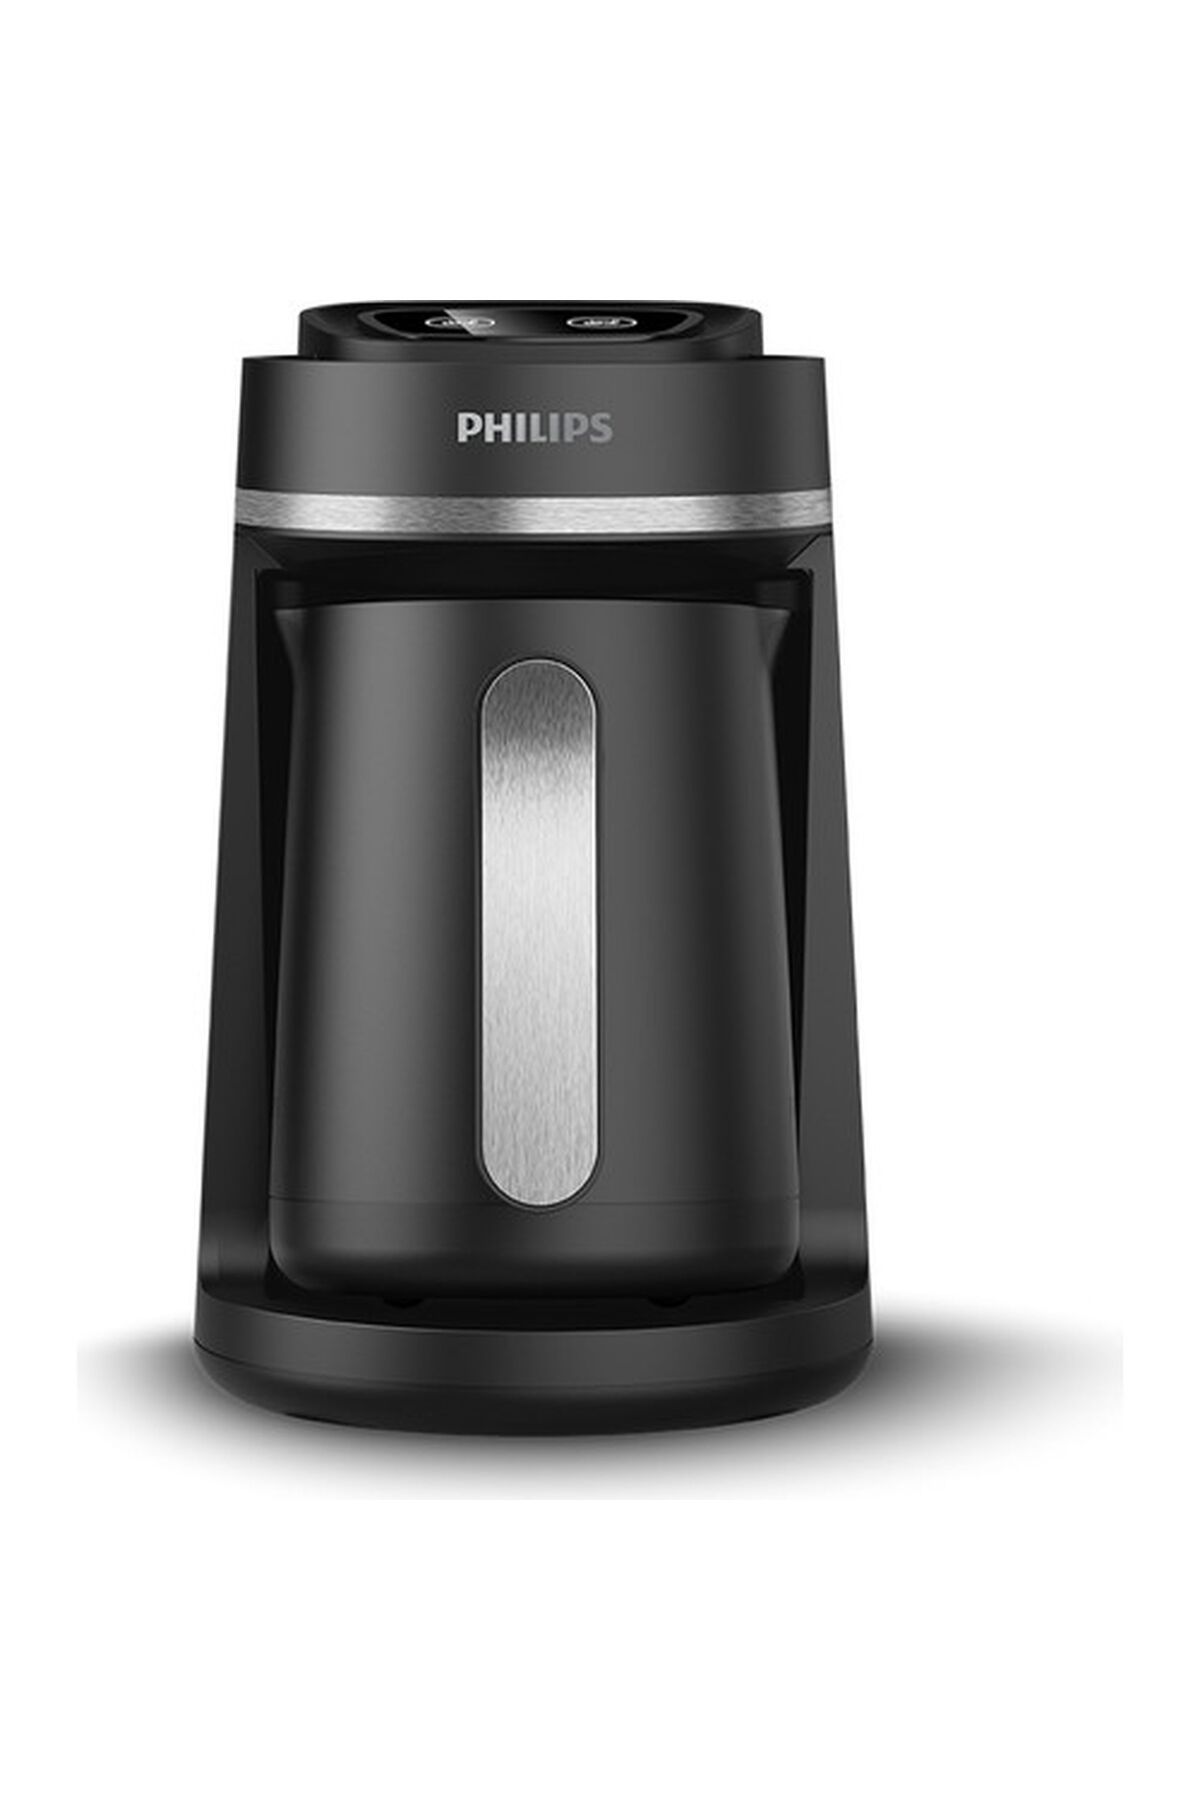 Philips Türk Kahvesi Makinesi